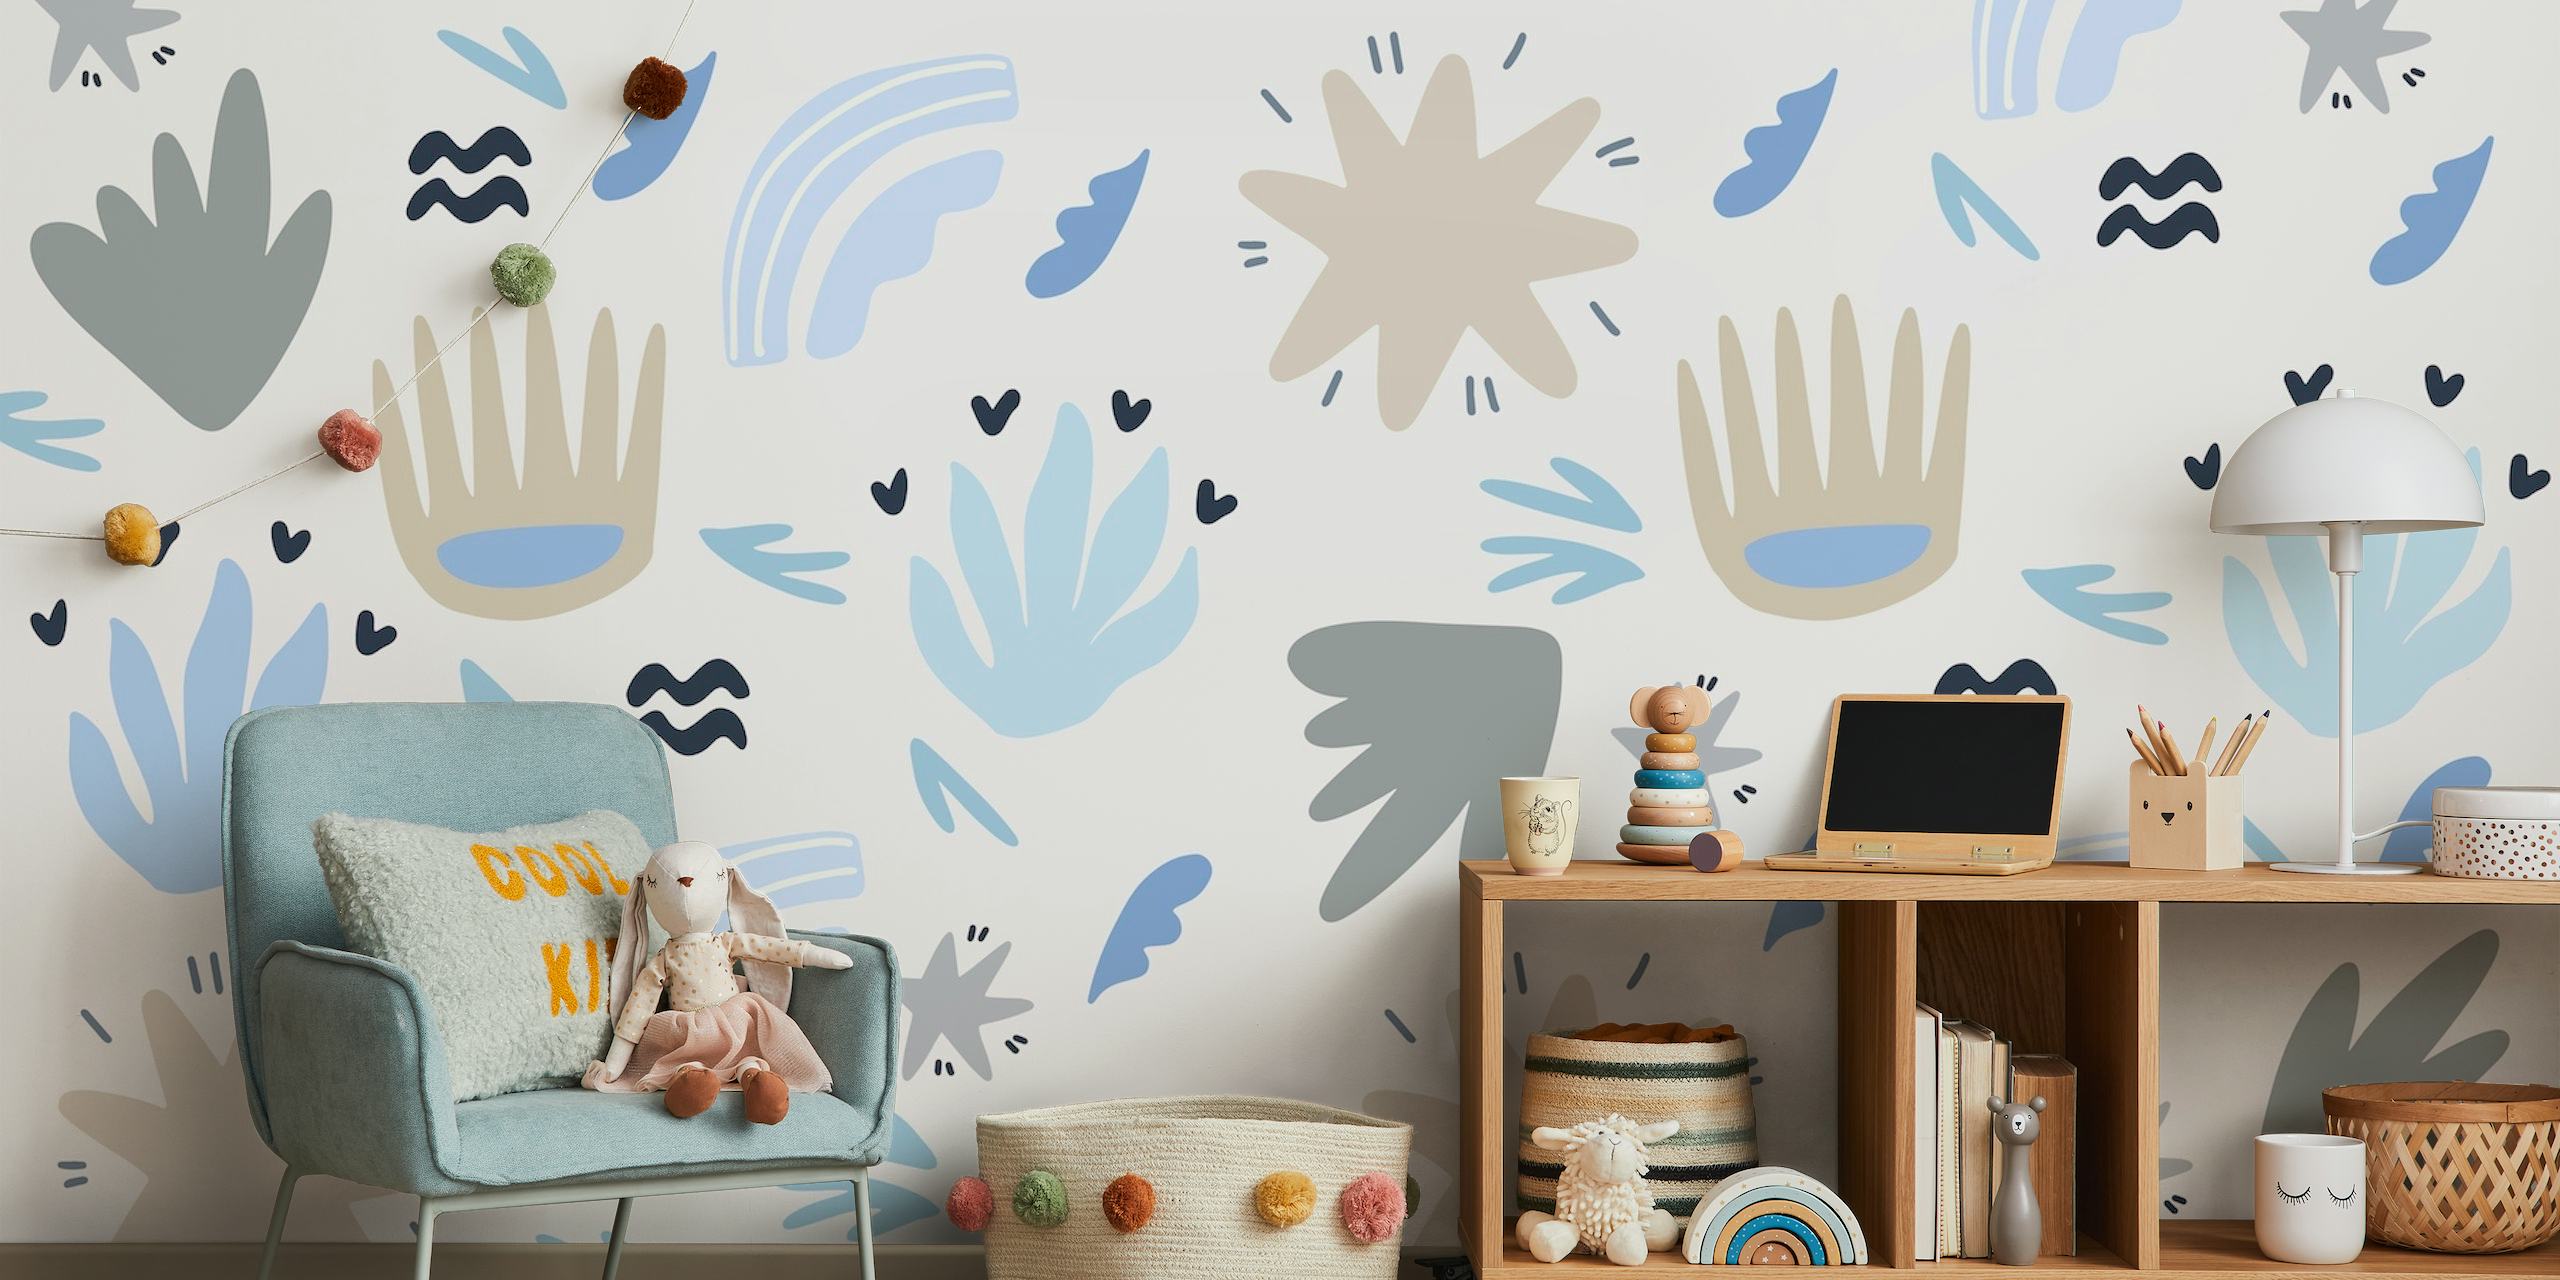 Abstract bloemen- en vormenpatroon in de kleuren blauw, grijs en wit voor kindermuurschildering